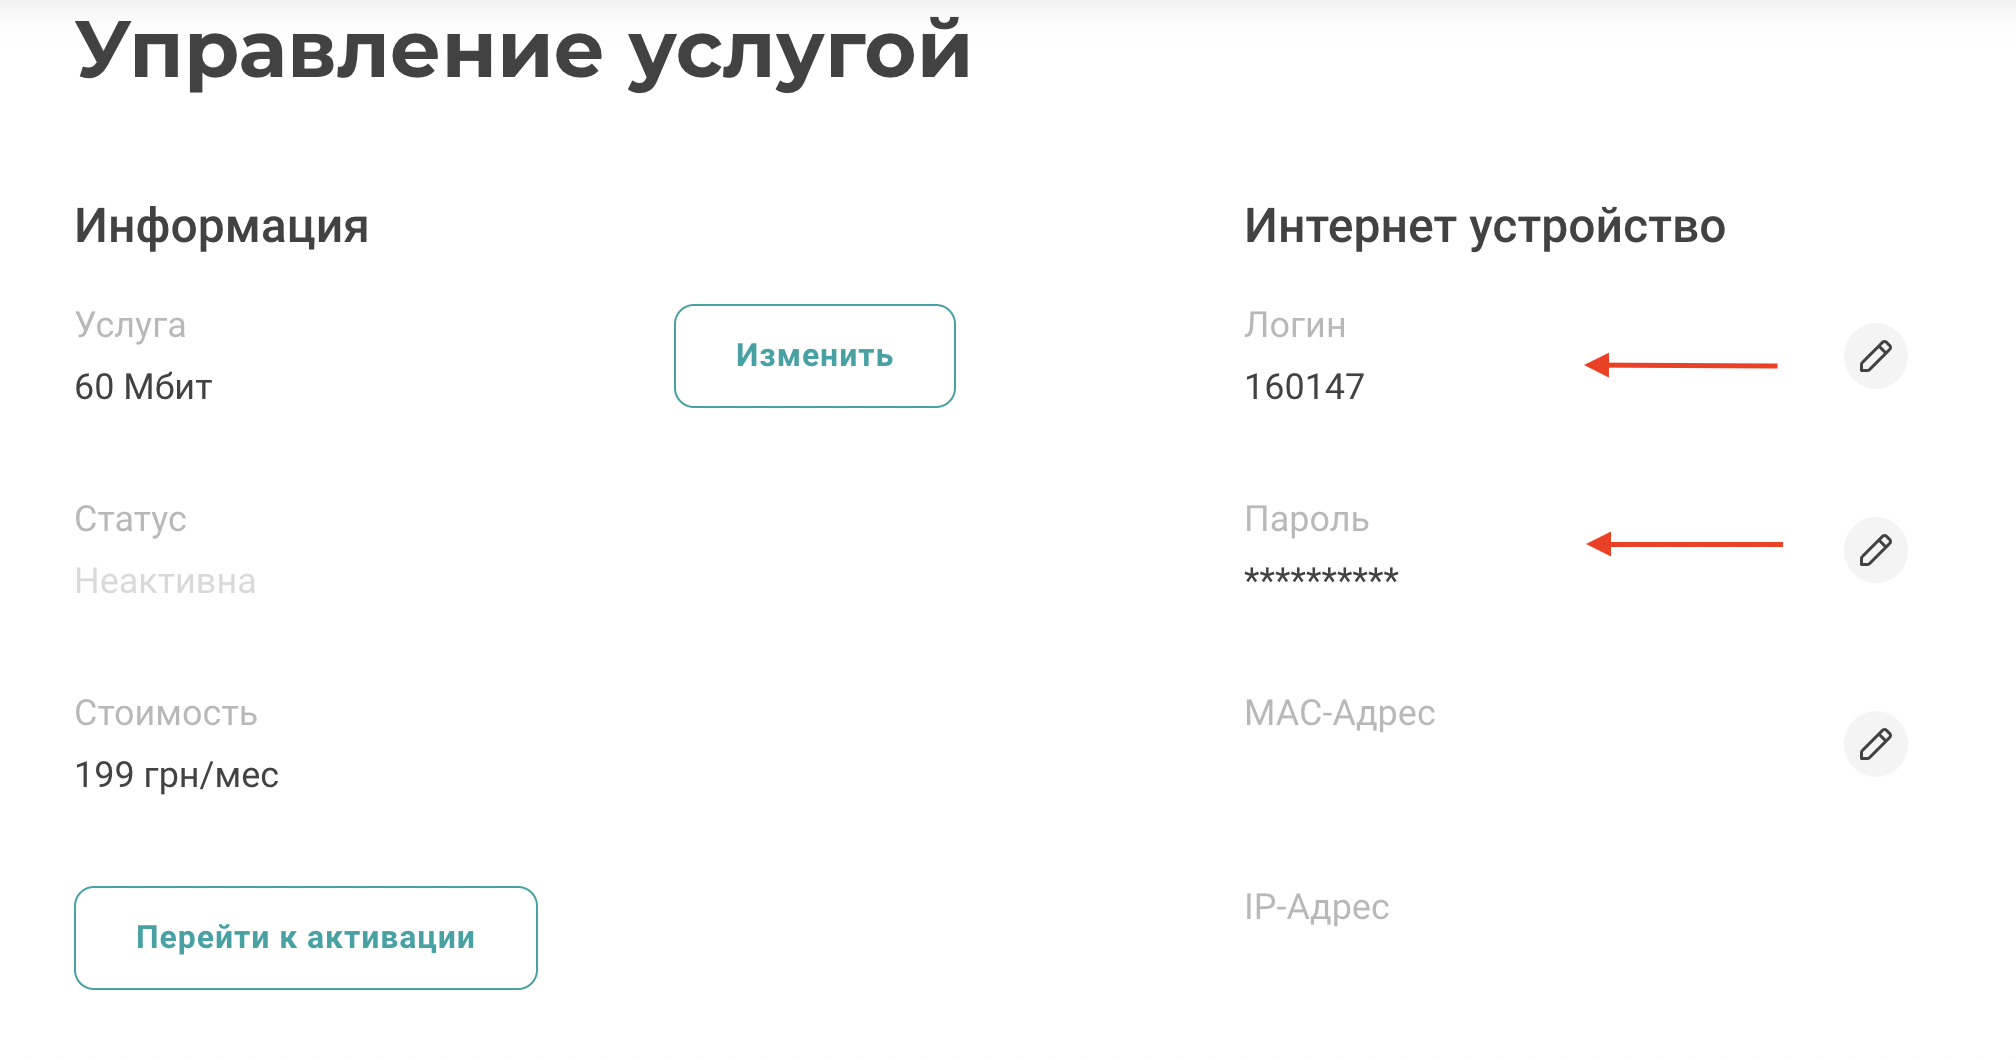 Активация учетной записи IPTV в личном кабинете,1 - интернет-провайдер Briz в Одессе